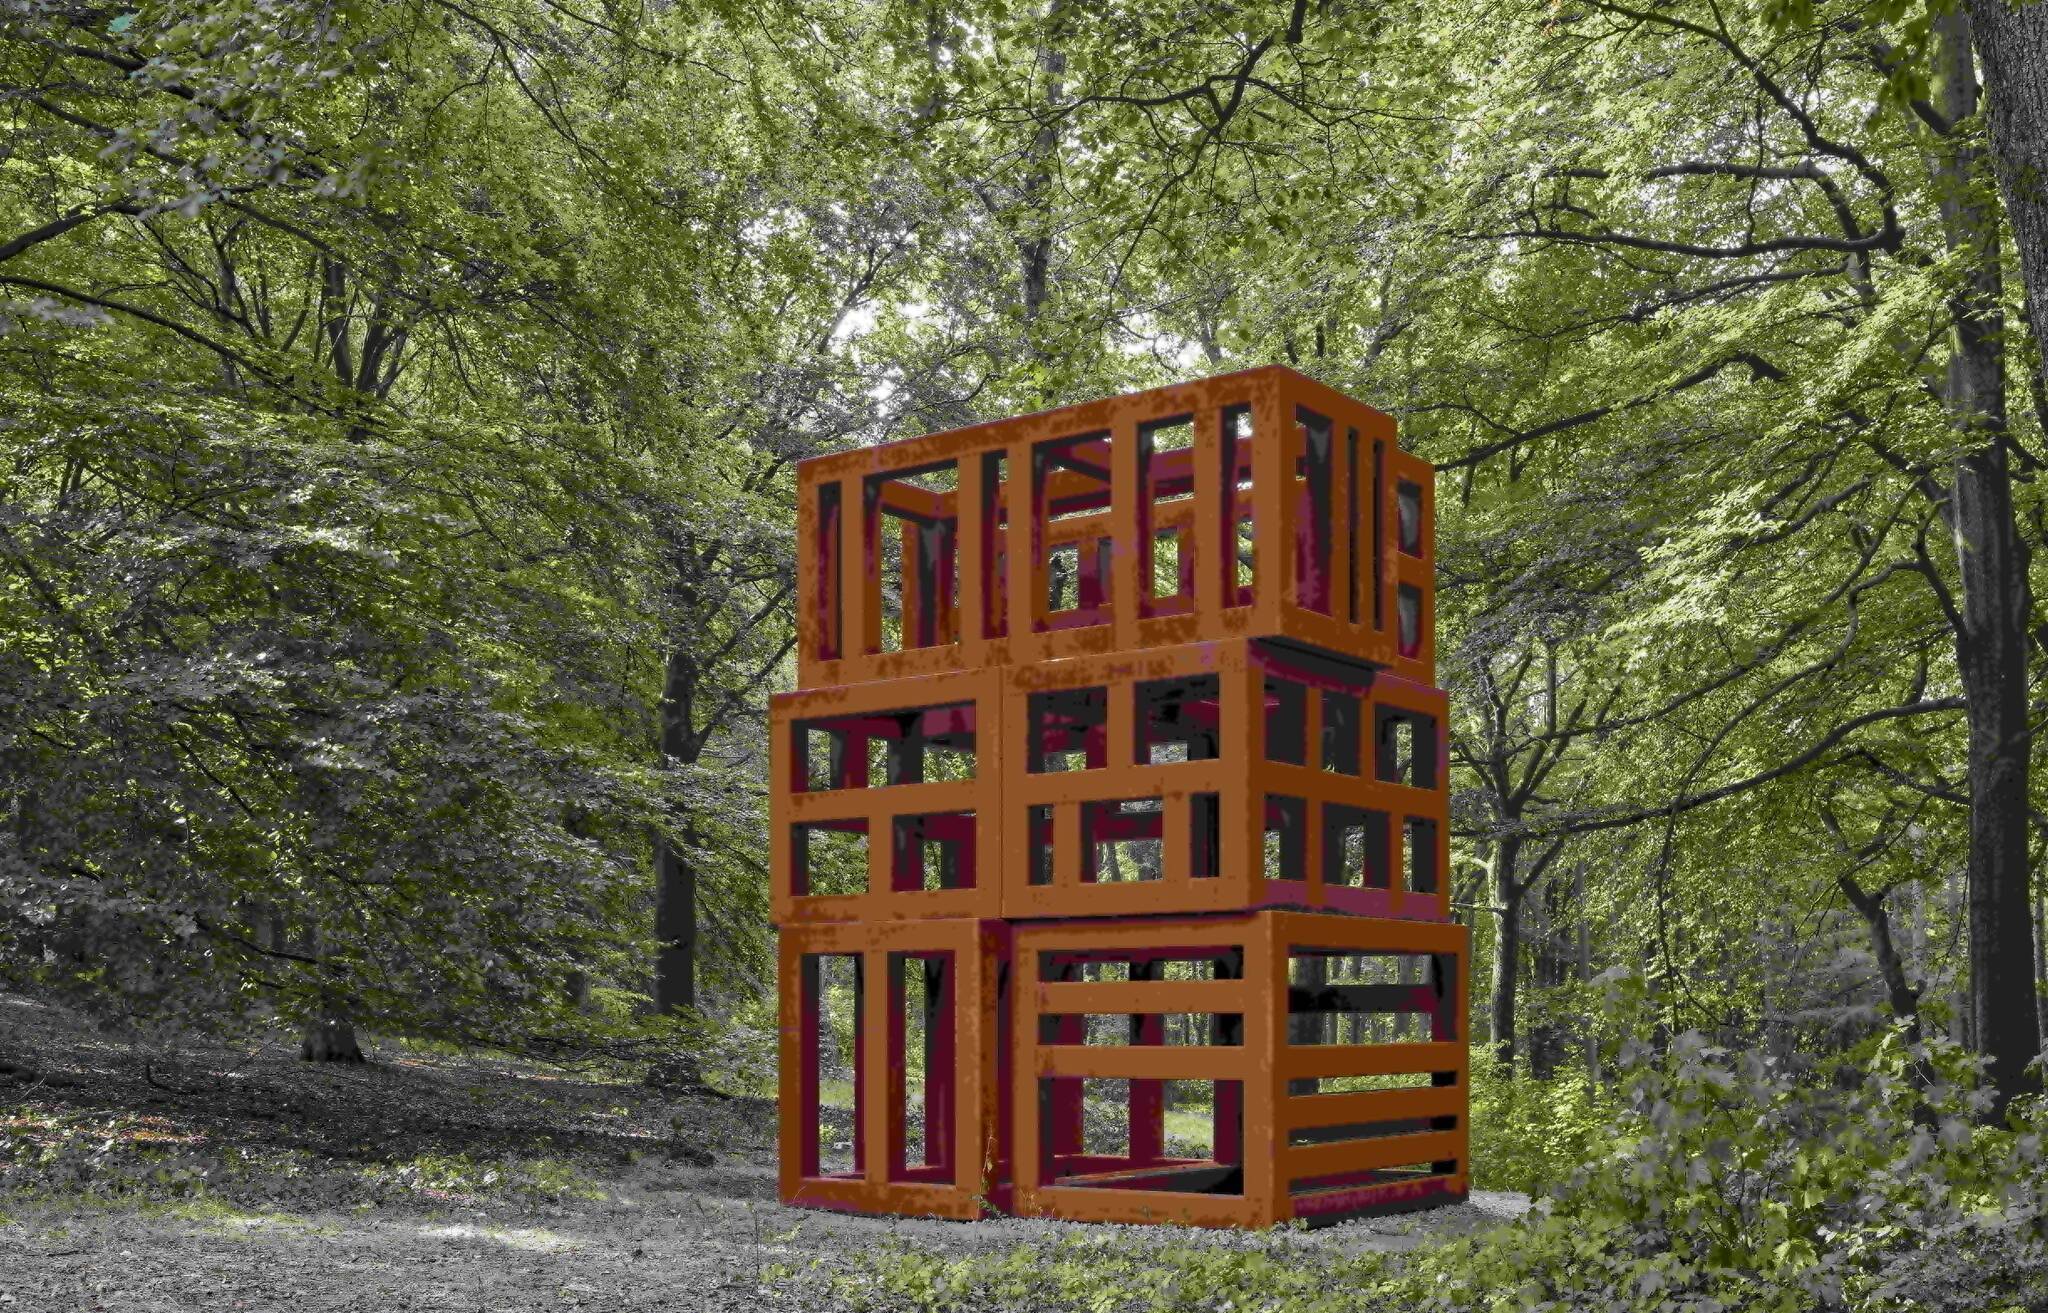  Ein besonderer Anblick im Skulpturenpark Waldfrieden: Sean Scullys Werk "Crate of Air Tower" aus dem Jahr 2020. 